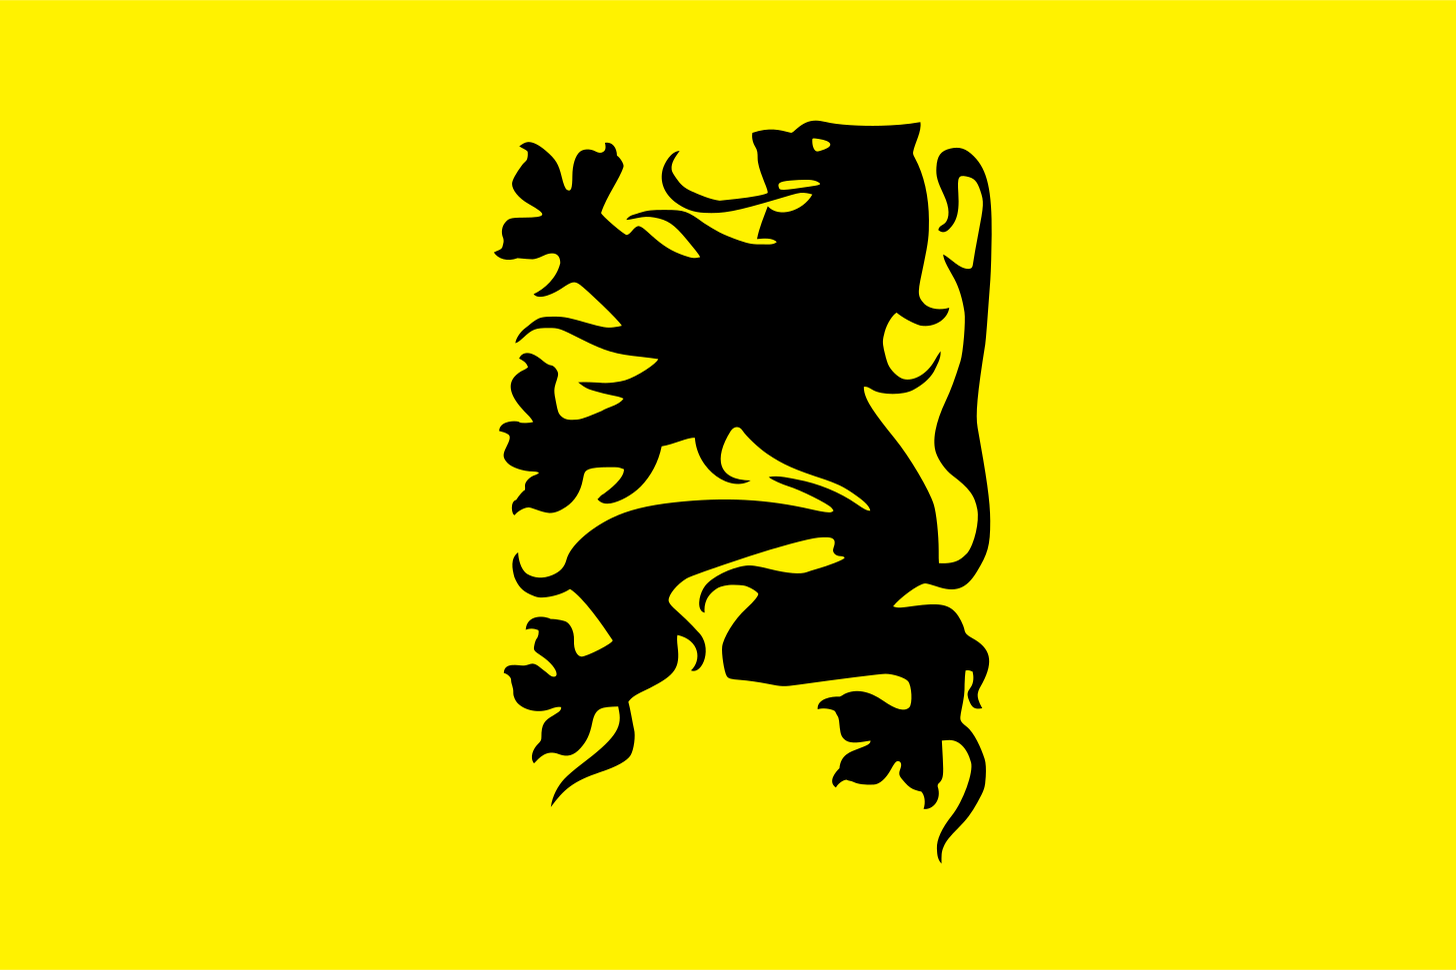 Flemish Movement - Wikipedia